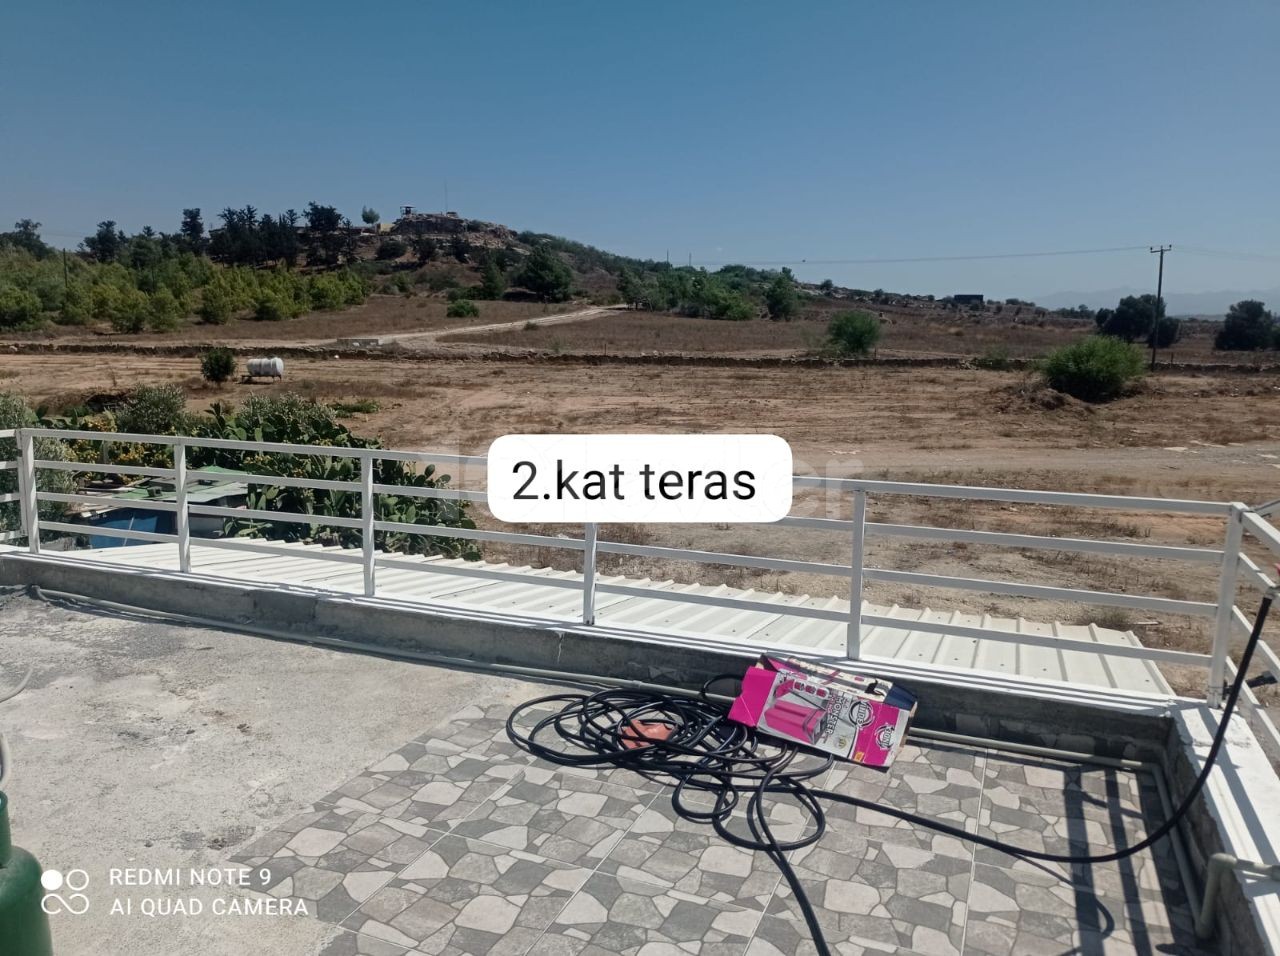 3 Einfamilienhäuser zum Verkauf in der Gegend von Alayköy werden nicht separat verkauft